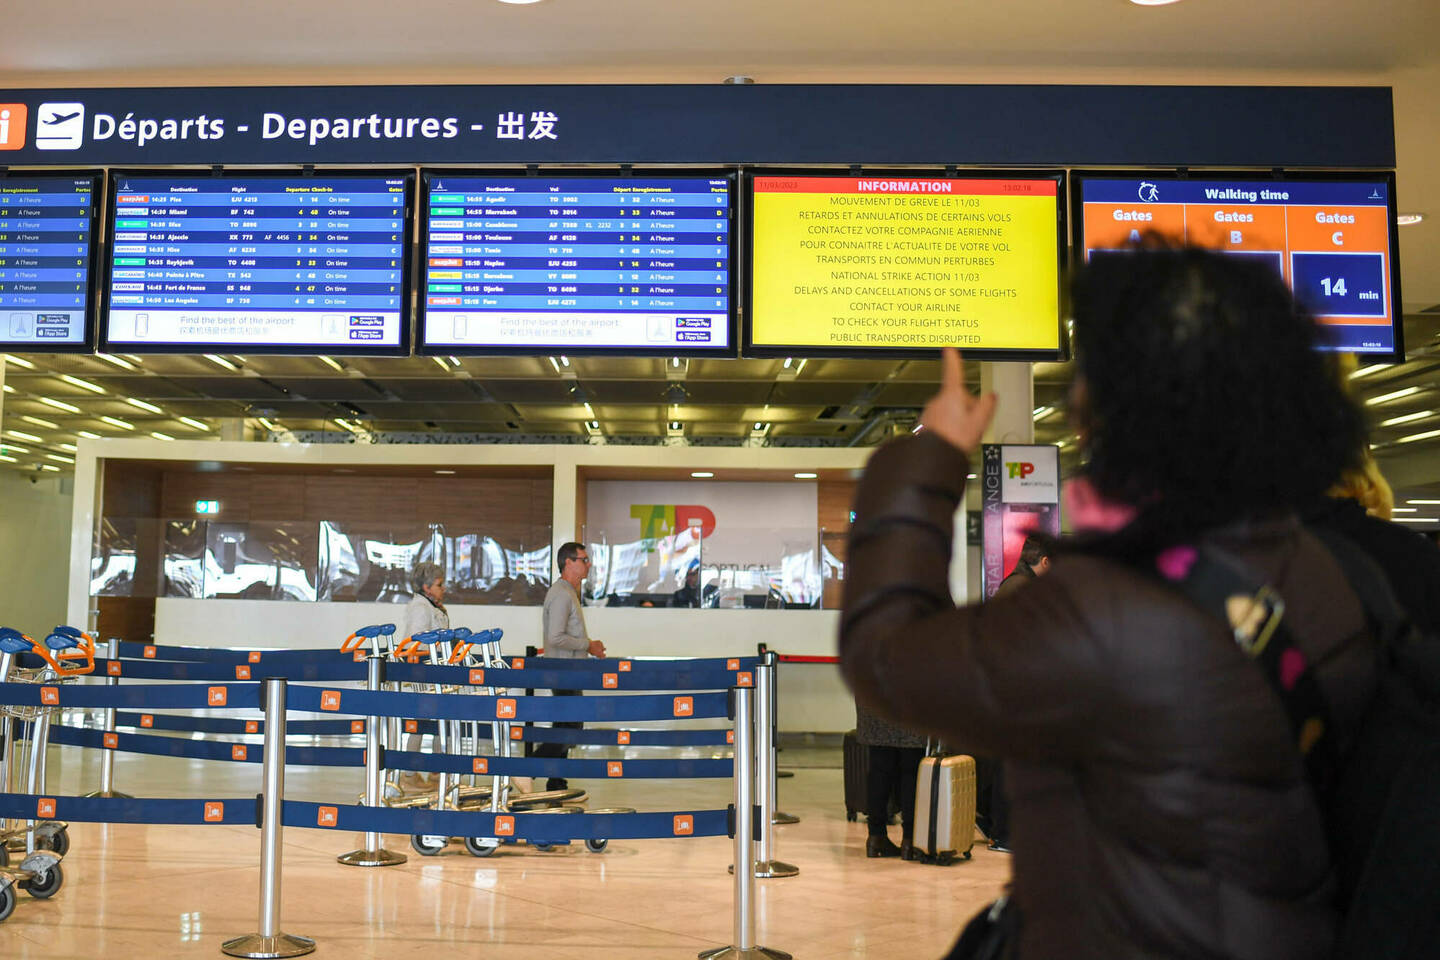 grève dans les aéroports : à quelles indemnités a-t-on le droit si son vol est annulé ?